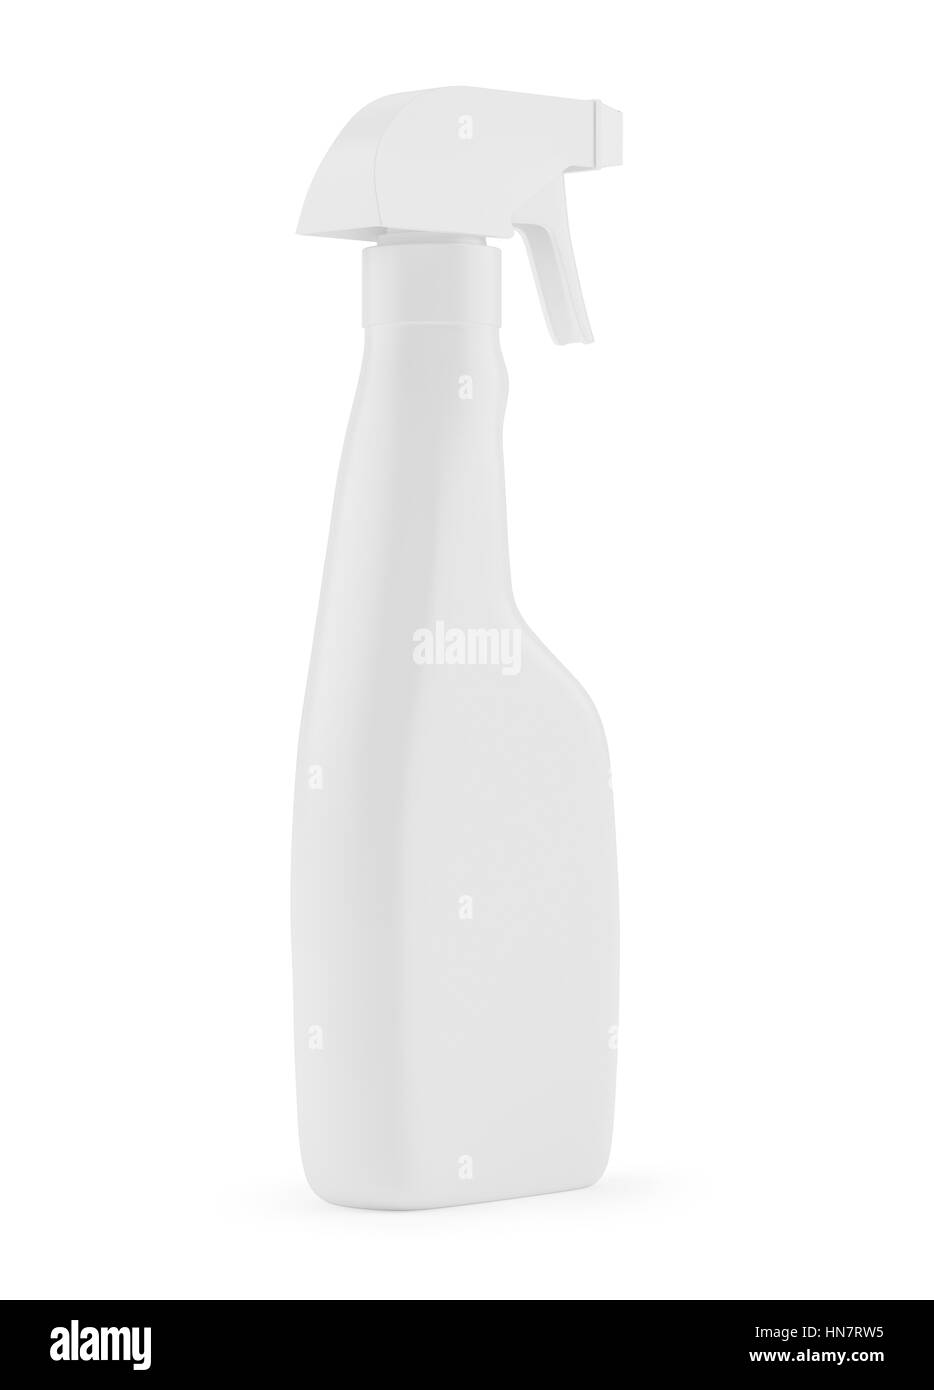 Blanco Blanco botella de detergente spray de plástico aislado en el fondo. Plantilla de embalaje boceto colección. Con trazado de recorte incluido. 3D rendering. Foto de stock